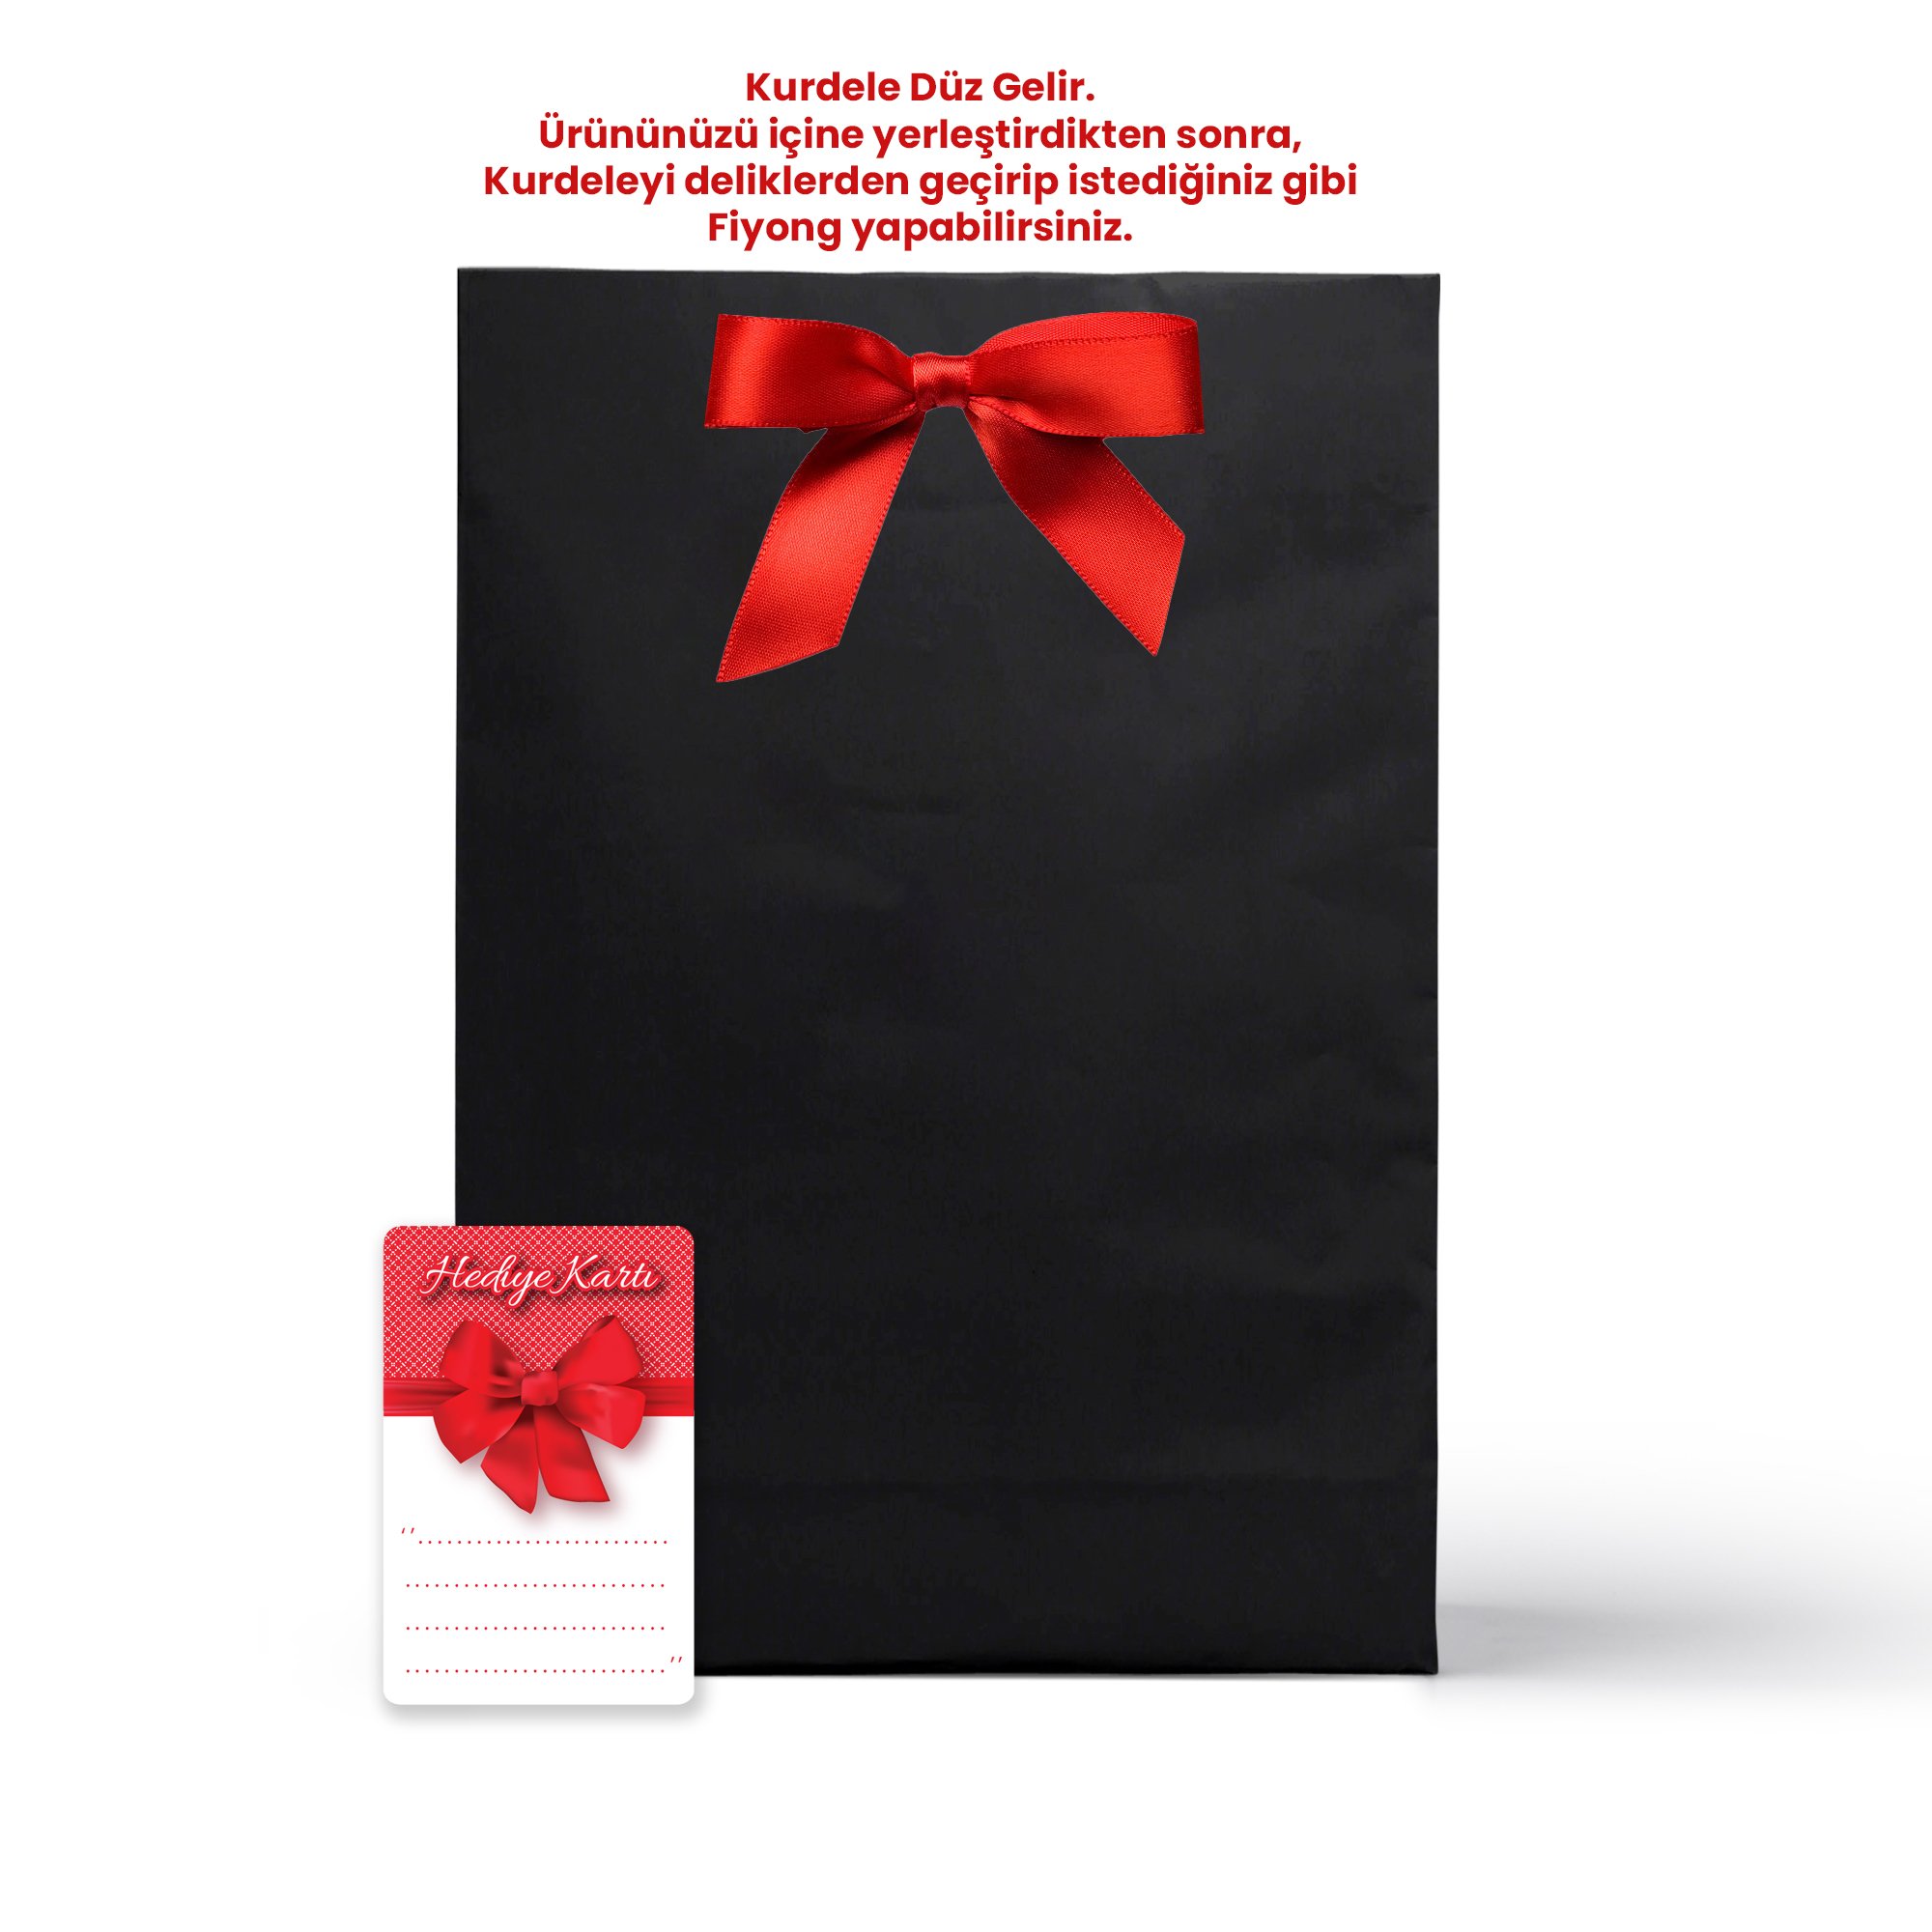 Siyah Karton Hediye Paketi Poşeti (Kurdele ve Hediye Not Kartı) 36x25x9cm - Kırmızı Kurdeleli Ürün